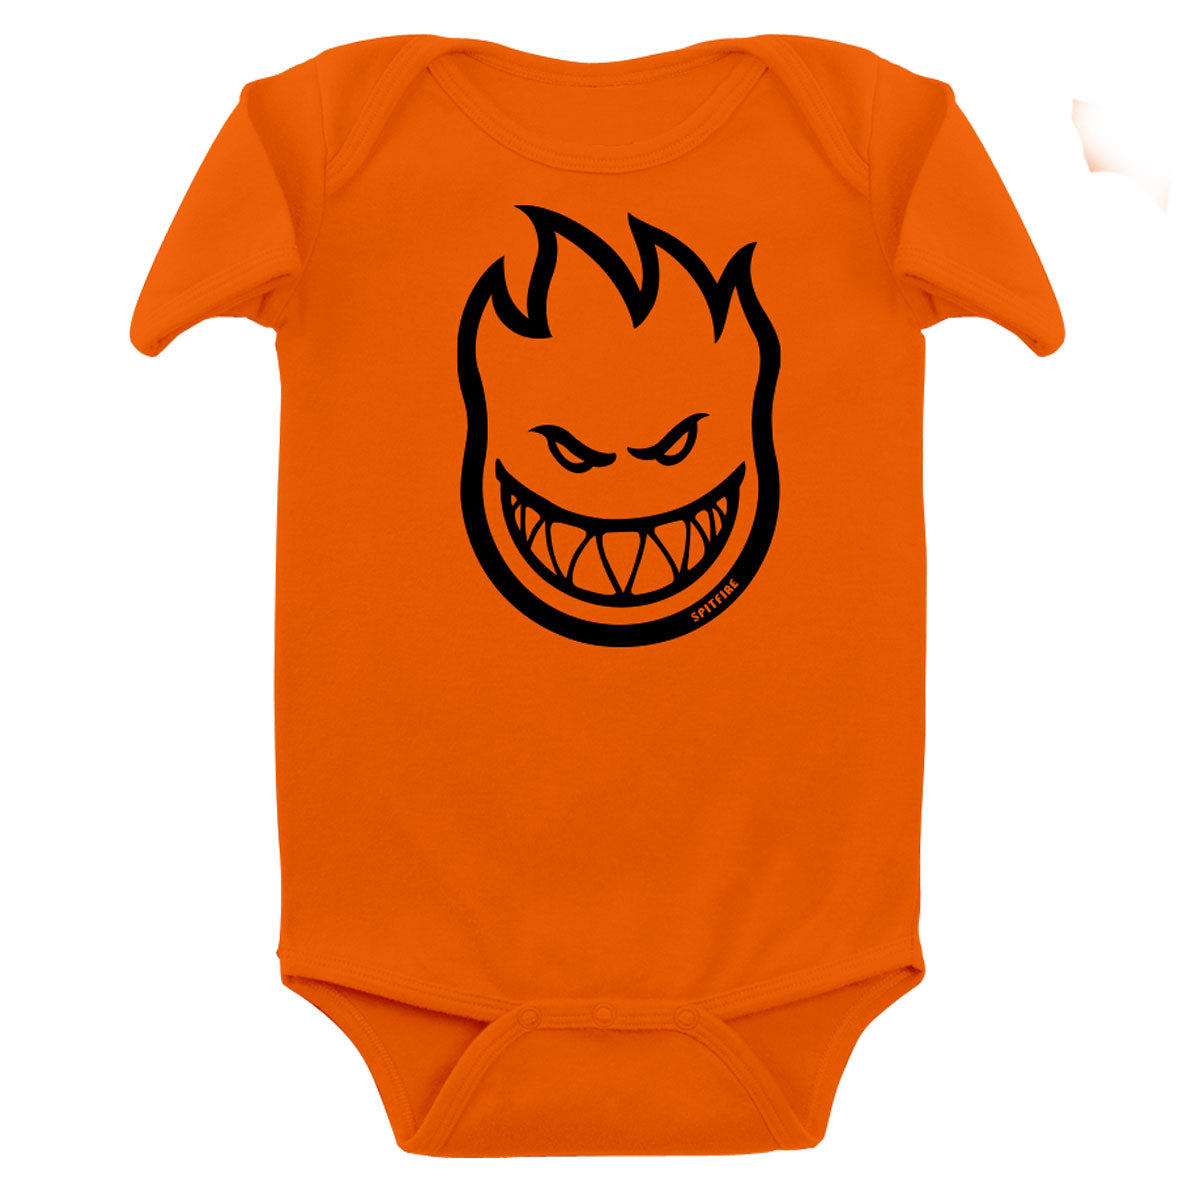 Spitfire Infants Bighead T-Shirt - Orange/Black image 1